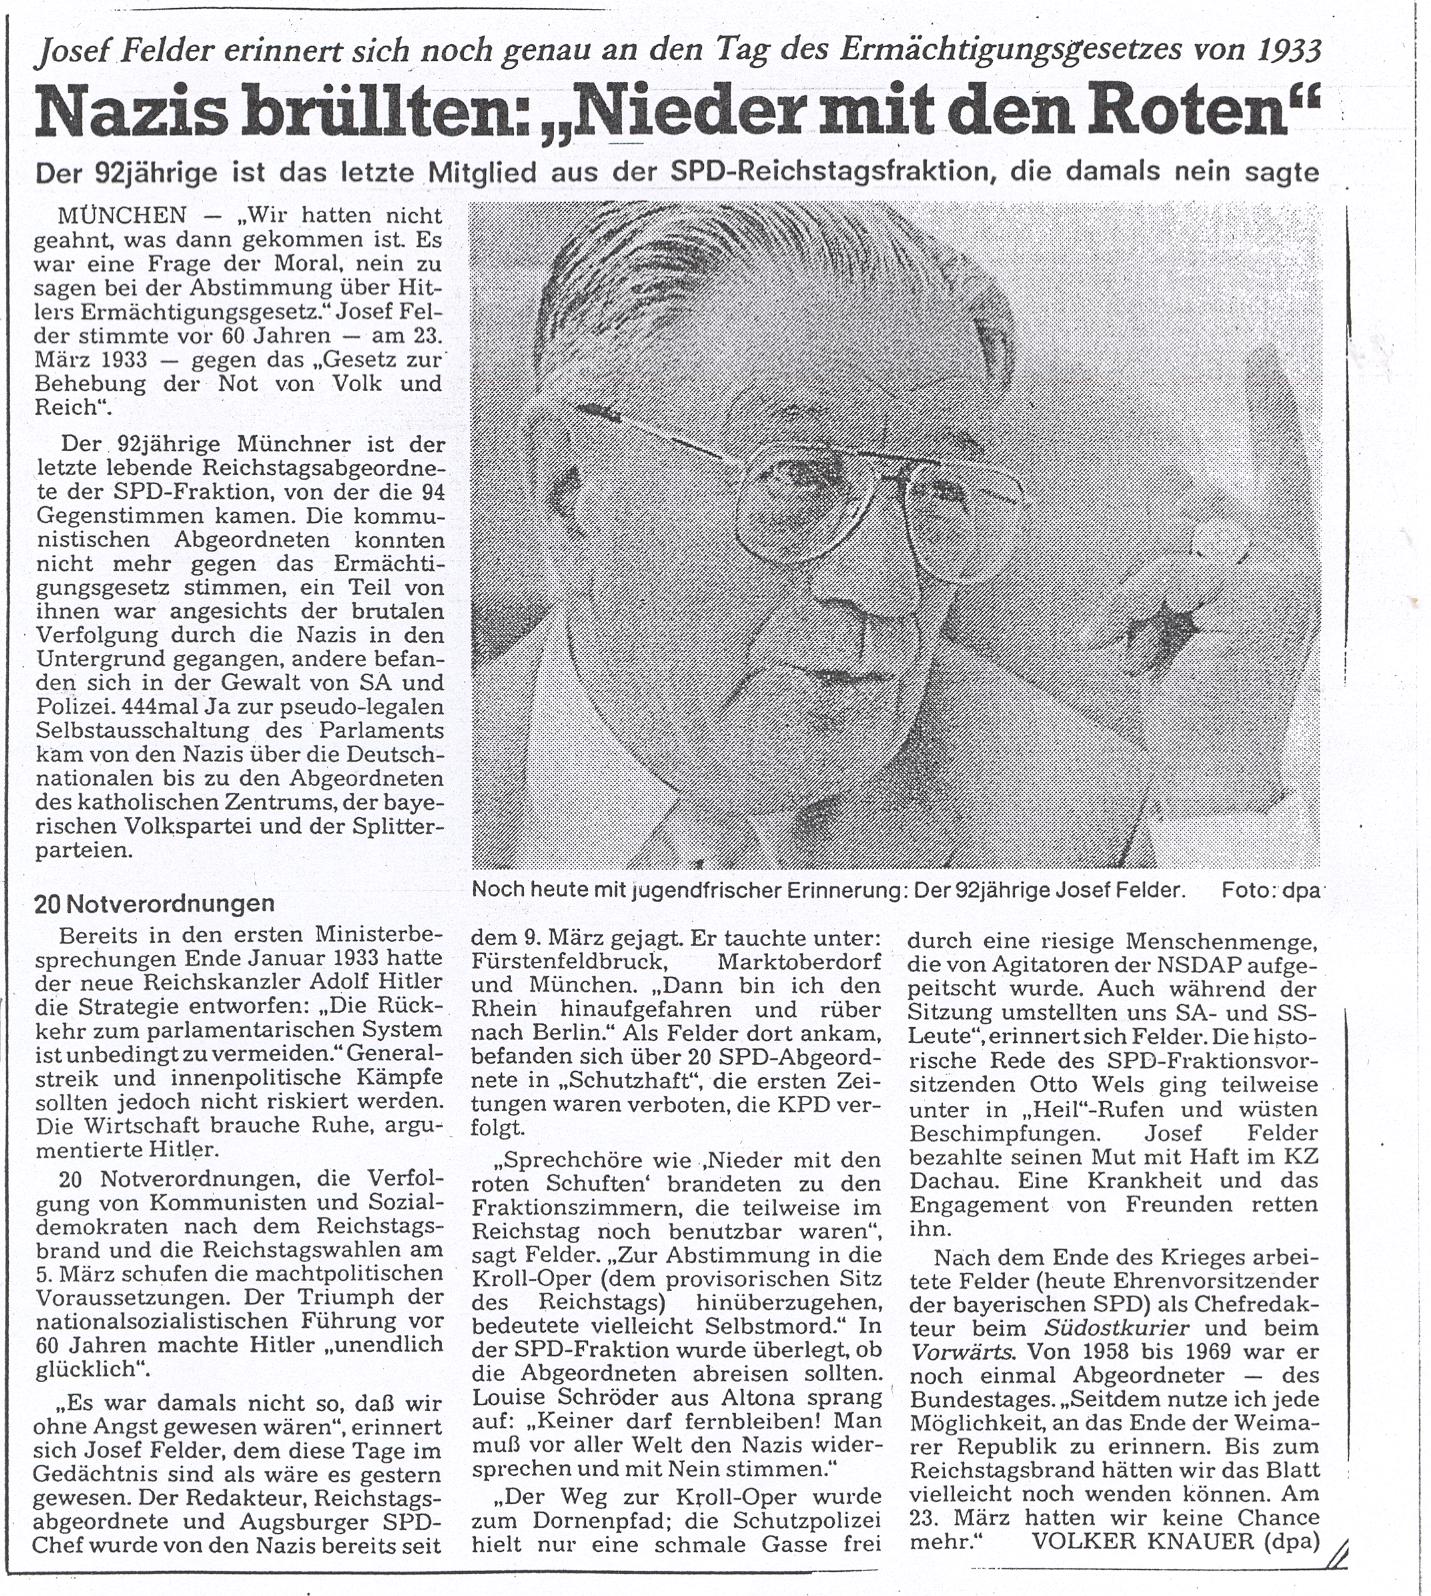 Josef Felder erinnert sich an den Tag des Reichsermchtigungs- gesetzes